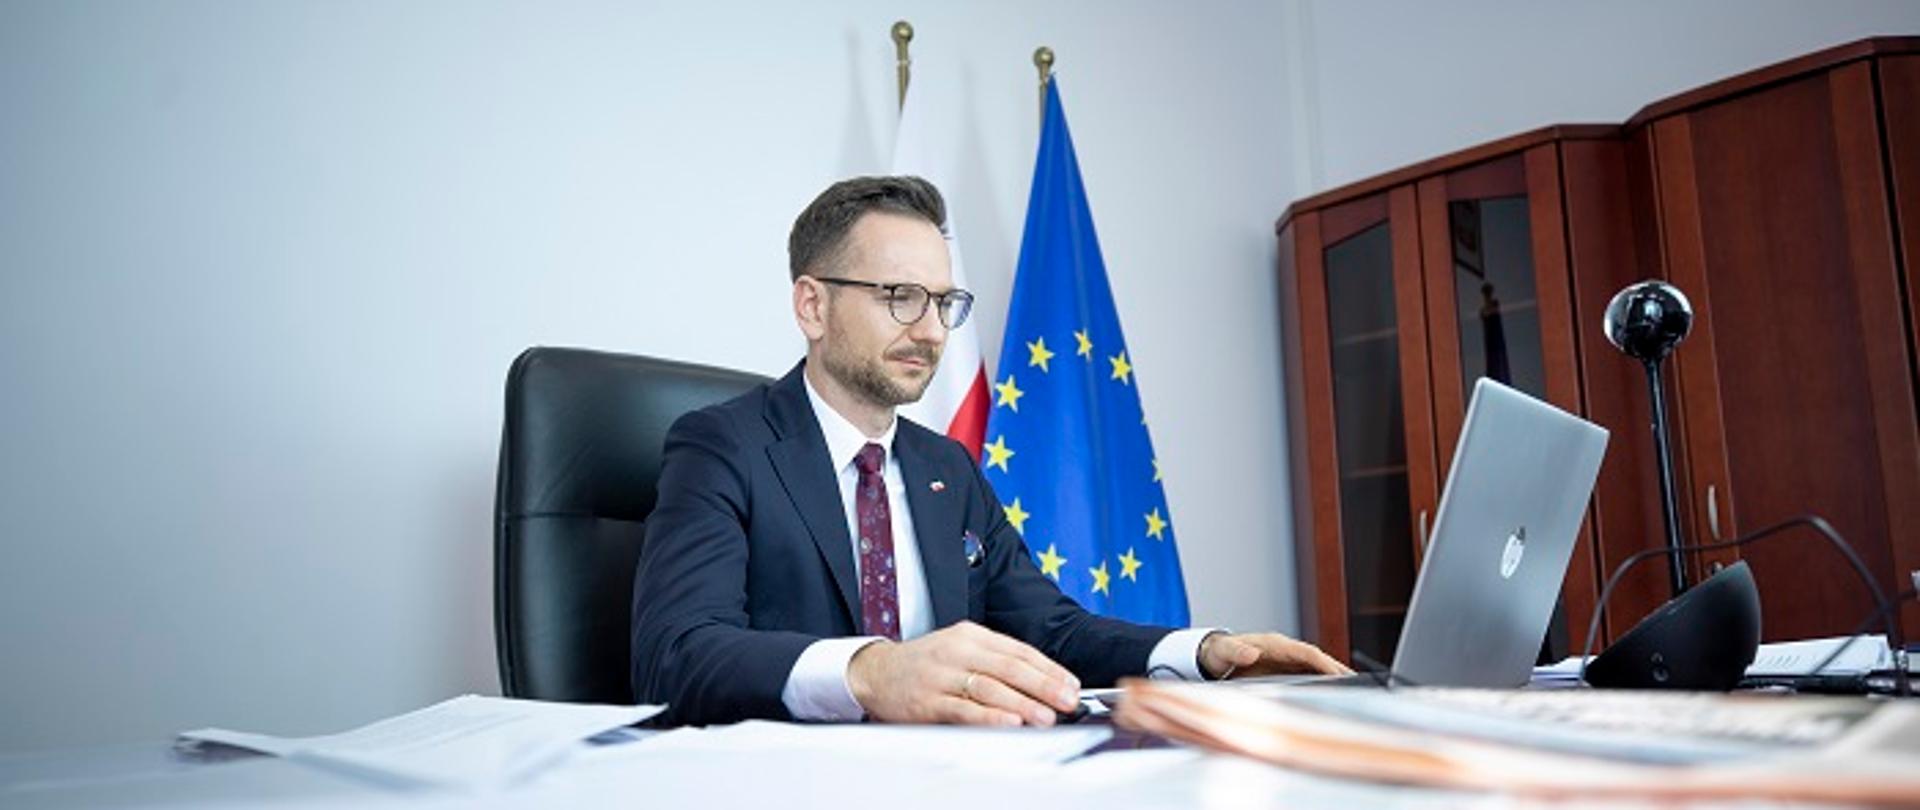 Wiceminister Waldemar Buda siedzi przy biurku przed laptopem. Z tyłu widoczne flagi UE i Polski.